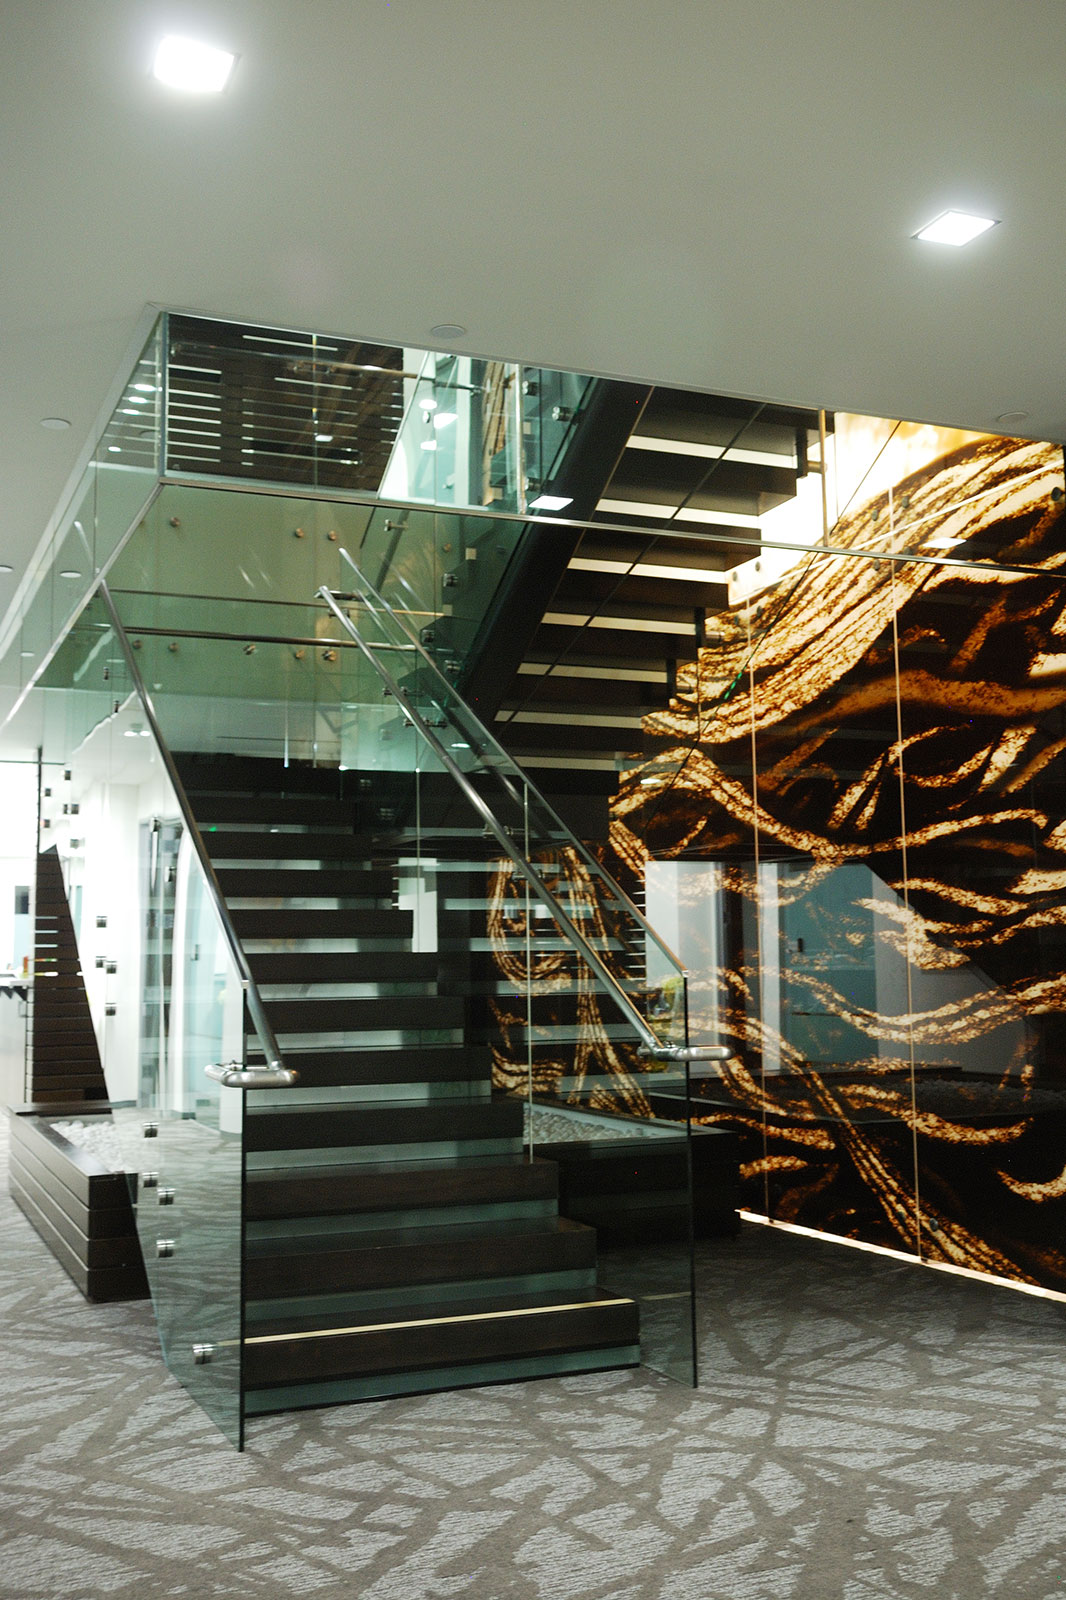 Procopio glass staircase1